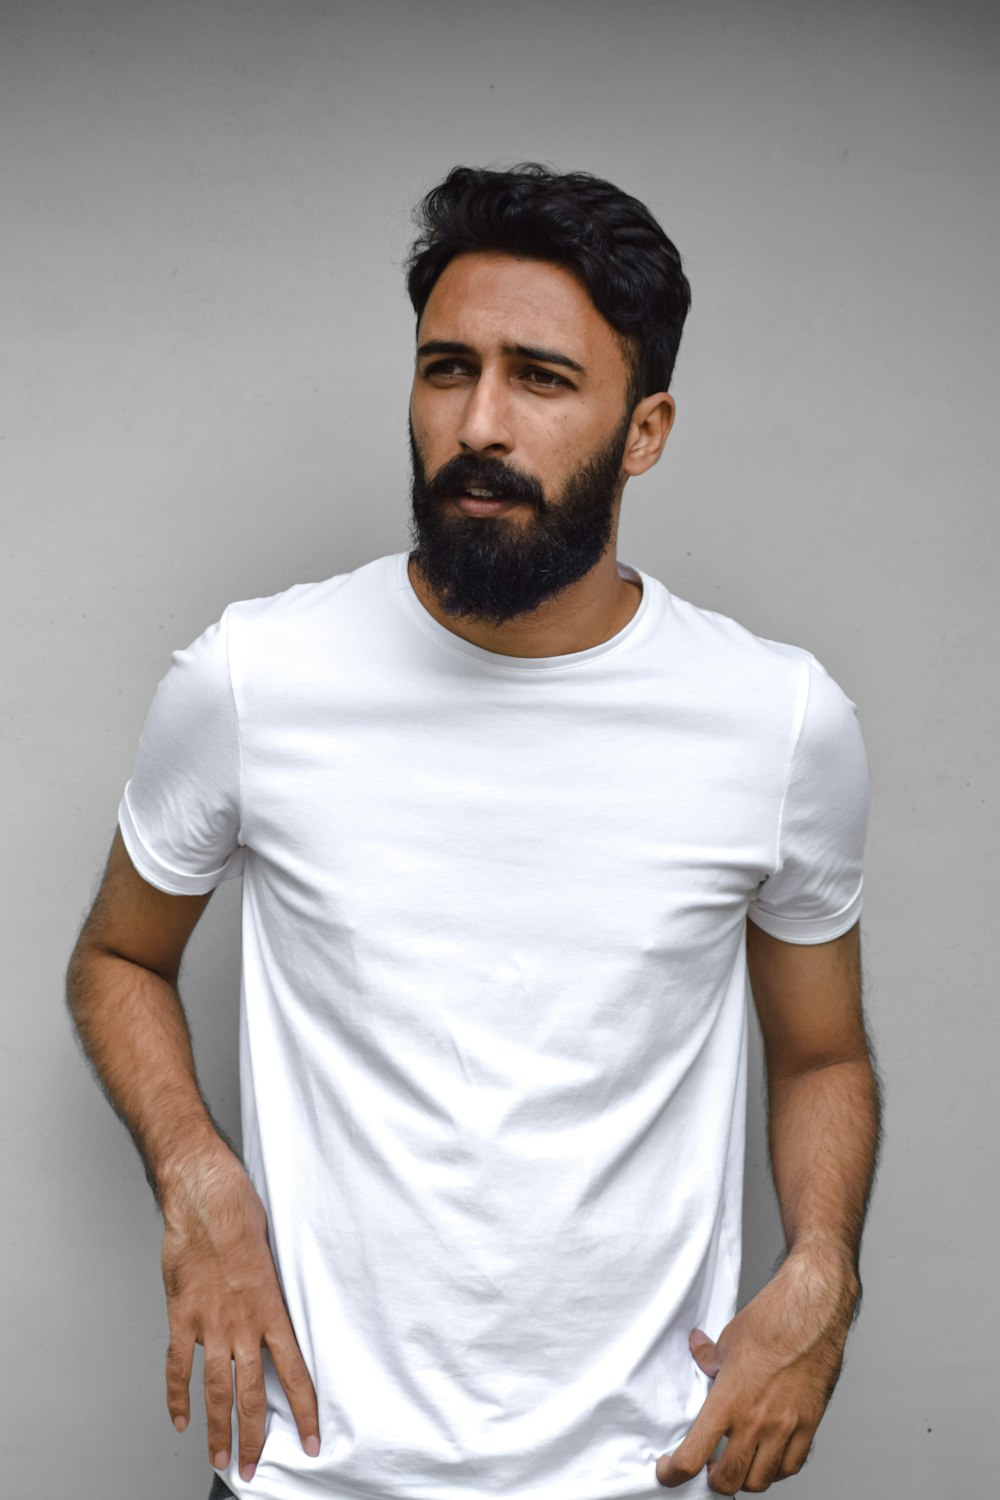 Man in white crew neck t-shirt photo – Free Dubai - united arab emirates  Image on Unsplash